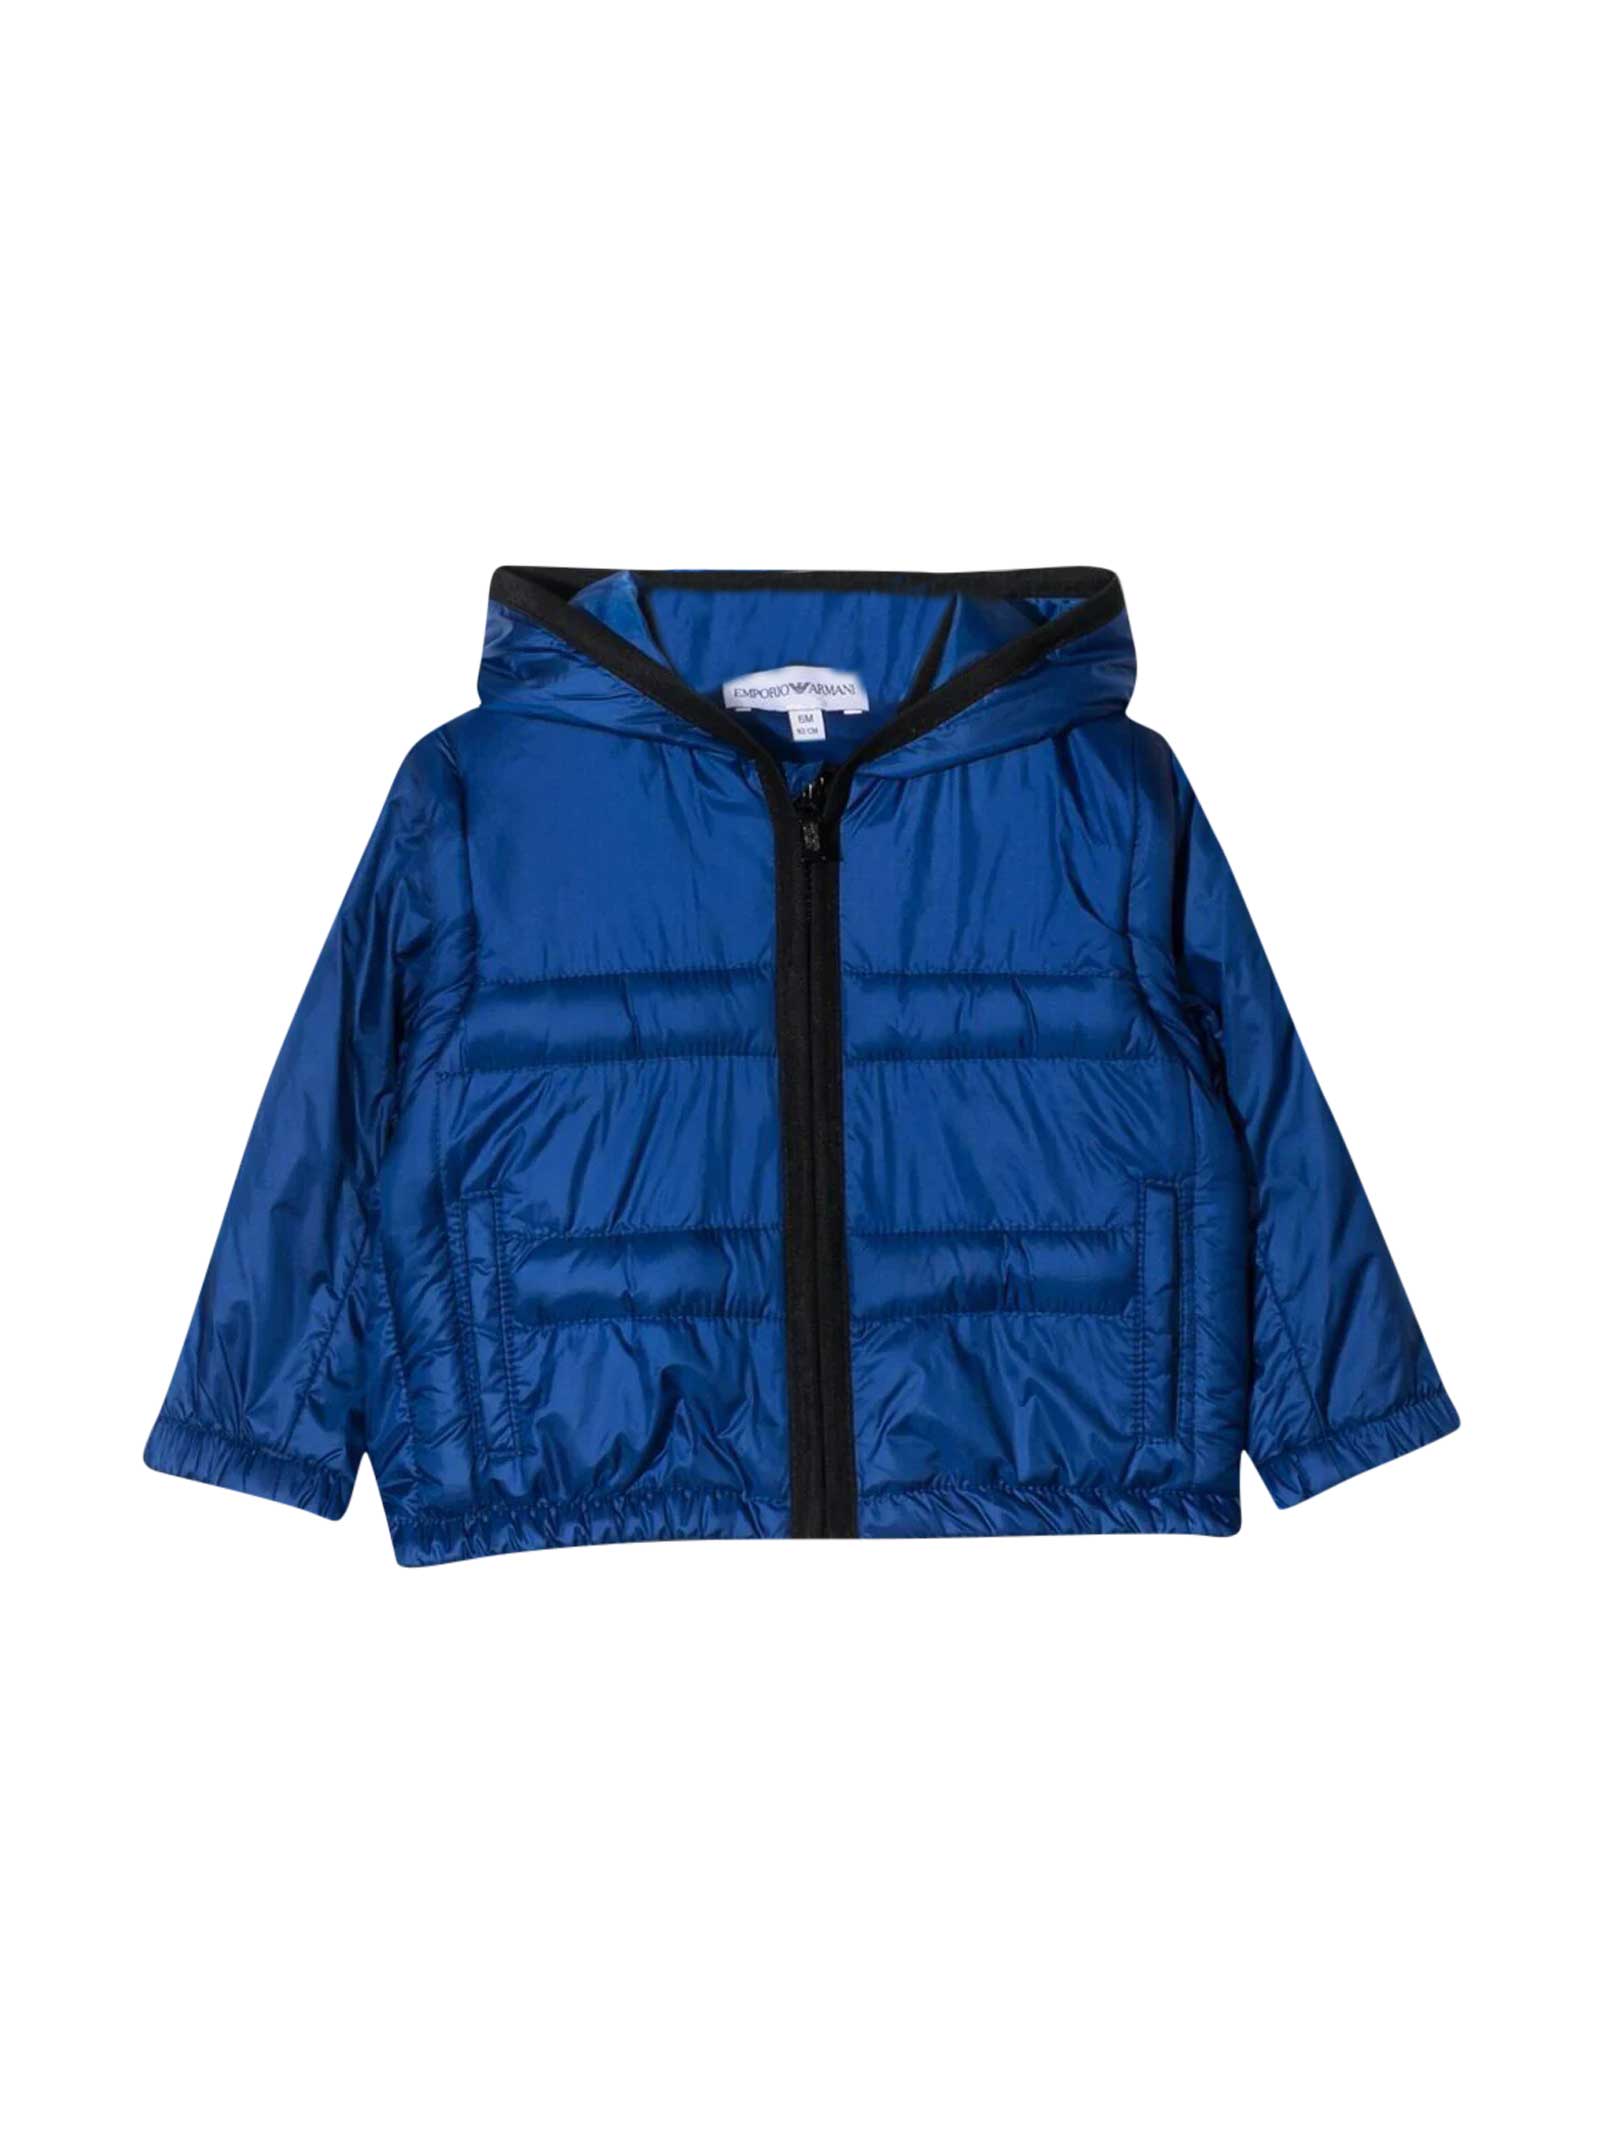 Emporio Armani Blue Padded Jacket